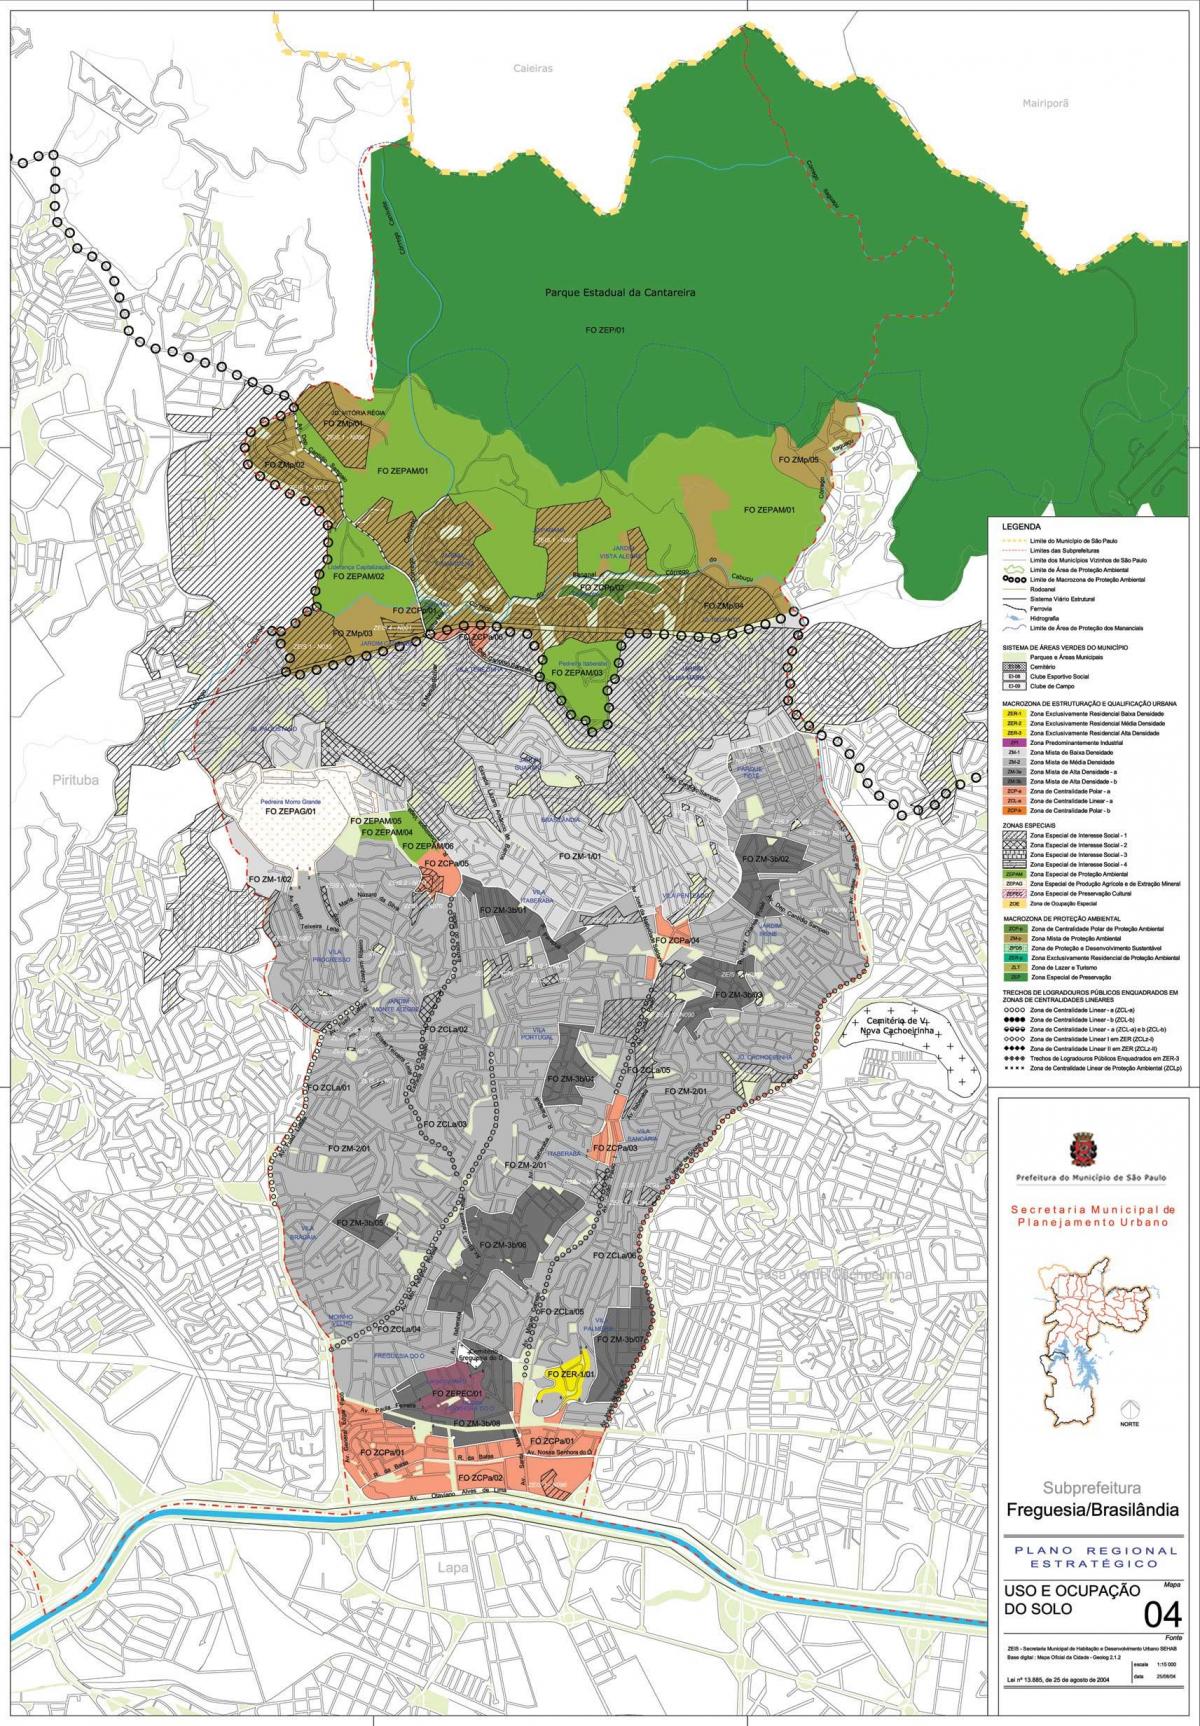 नक्शे के फ्रेगुएसिया Ó साओ पाउलो - व्यवसाय की मिट्टी